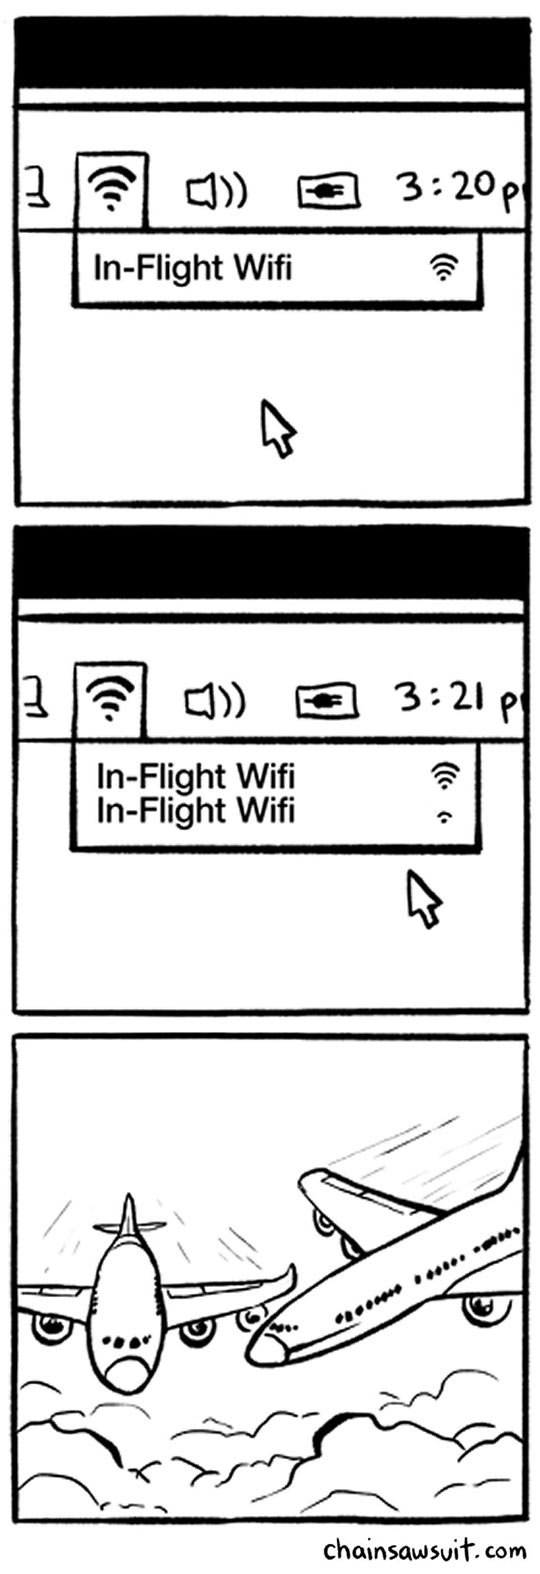 In-Flight WiFi…